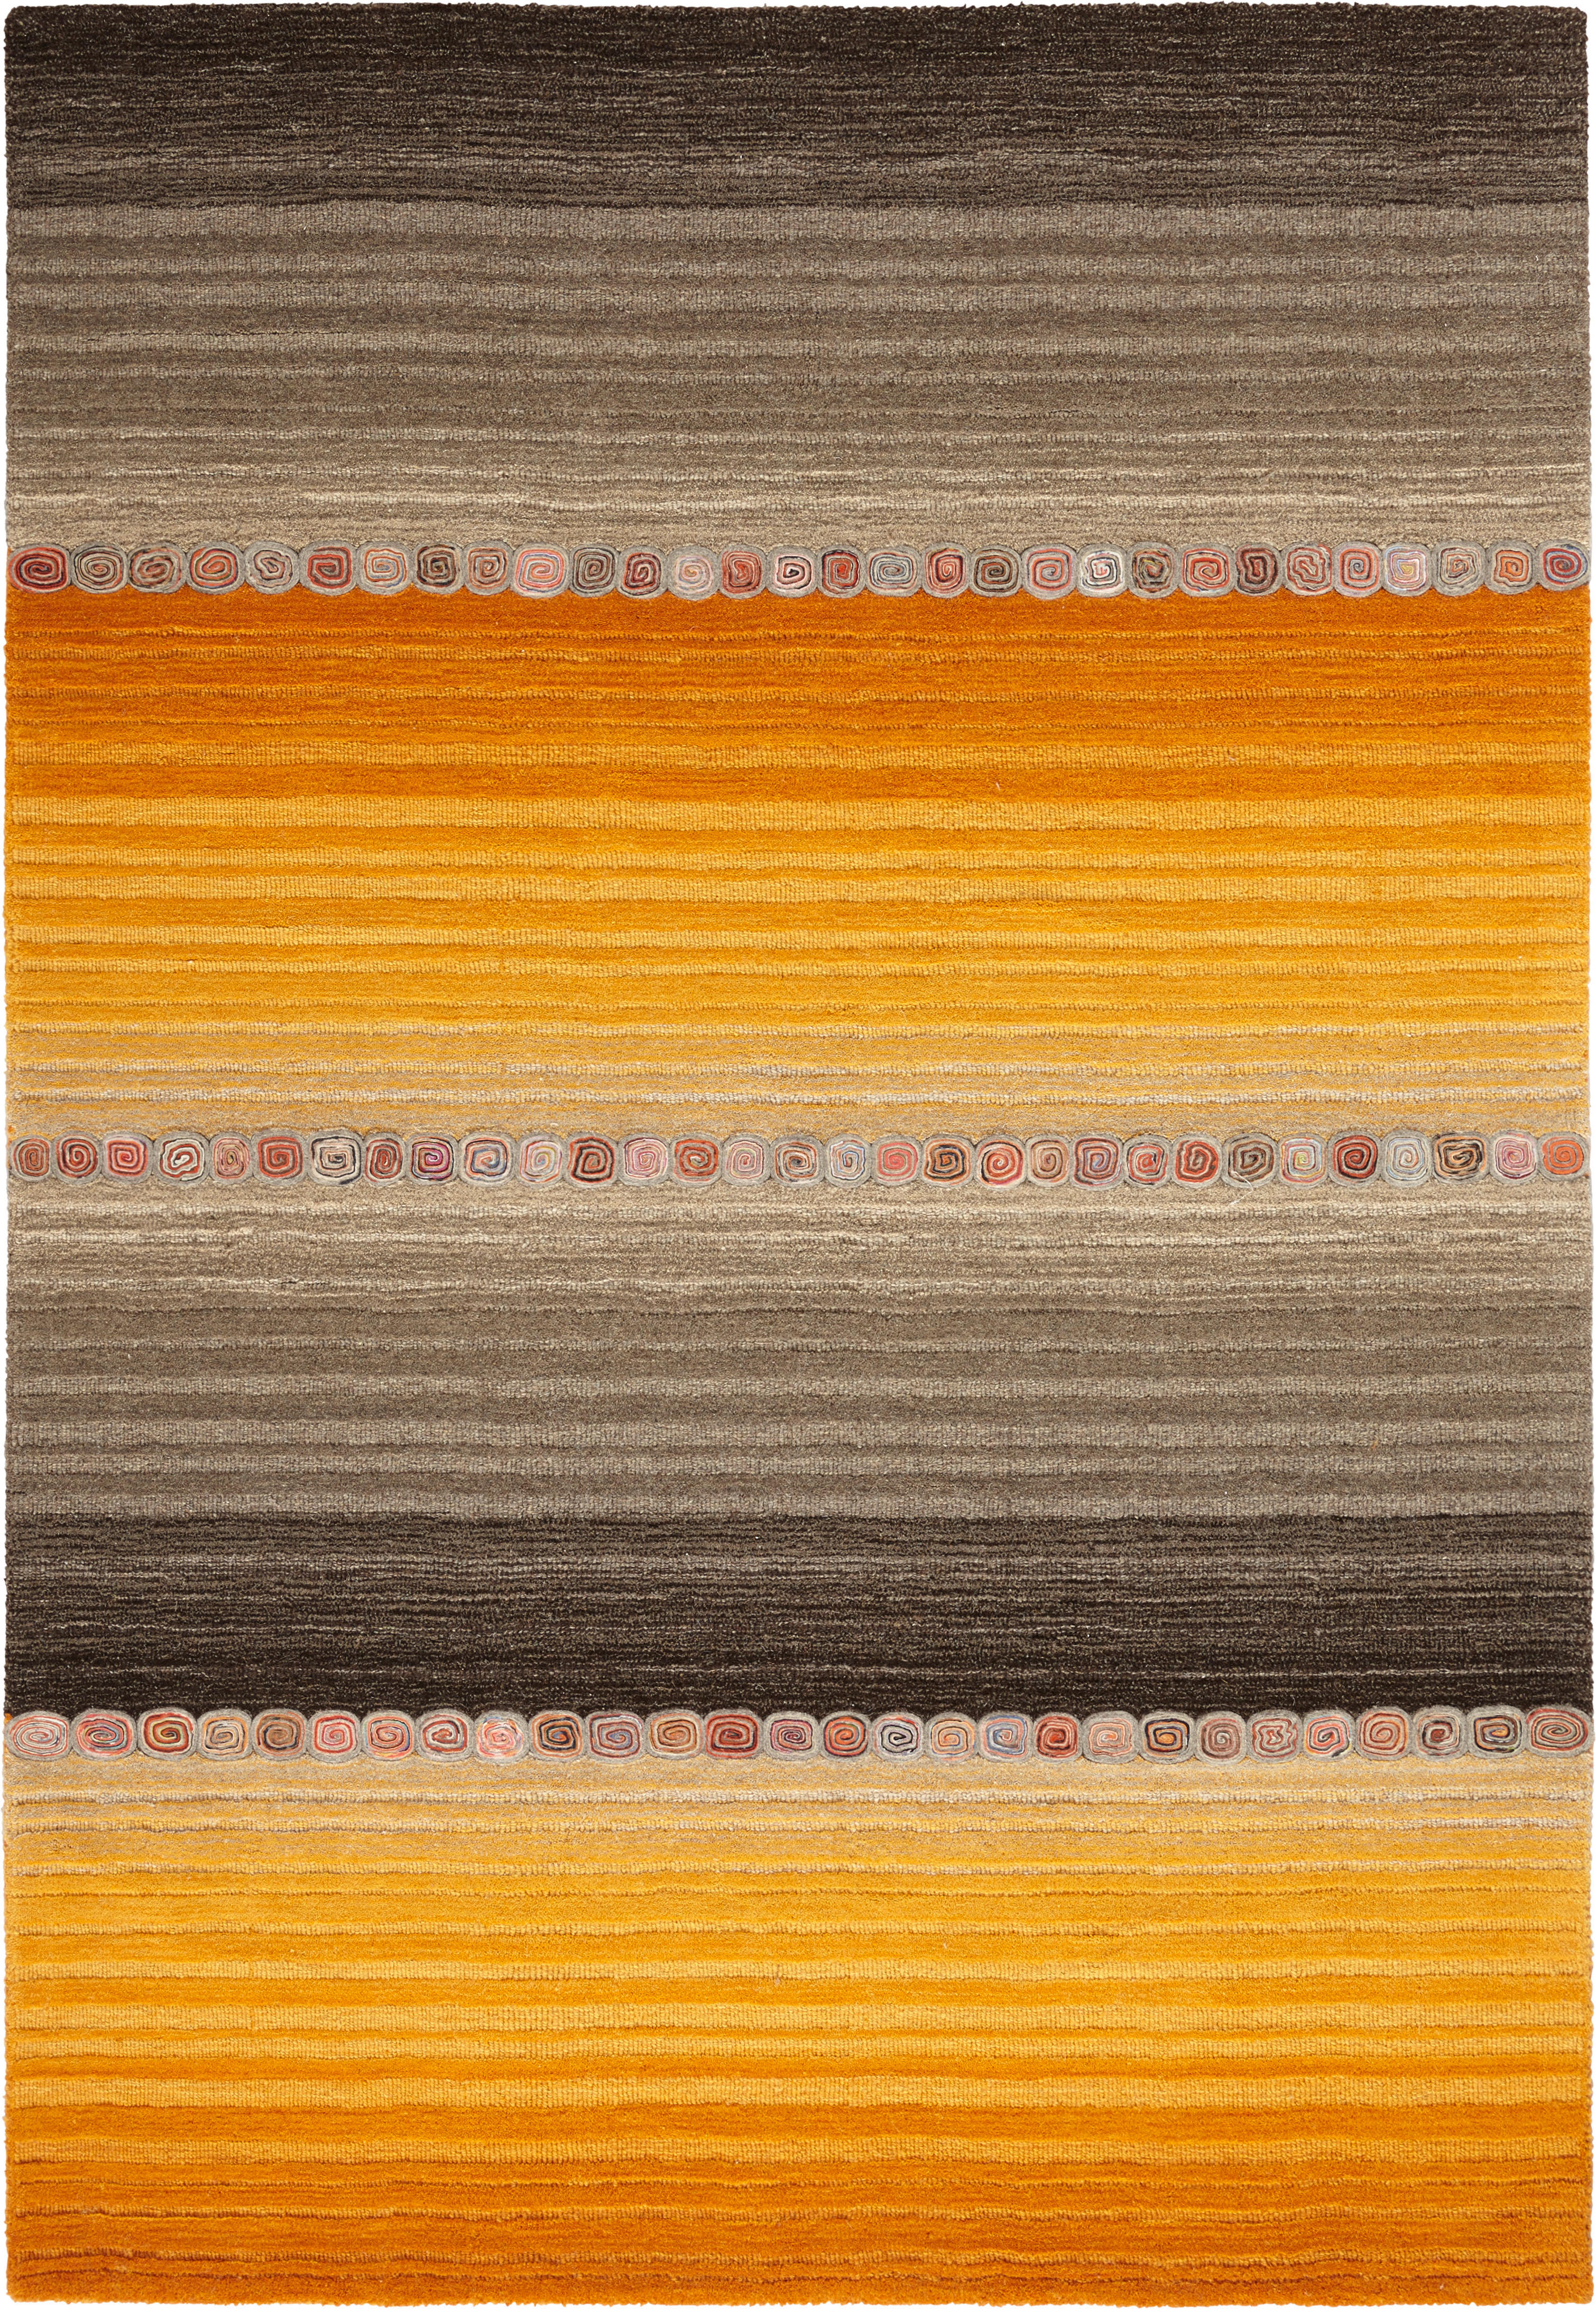 Cazaris ORIENTÁLNÍ KOBEREC, 250/350 cm, hnědá, oranžová - hnědá, oranžová